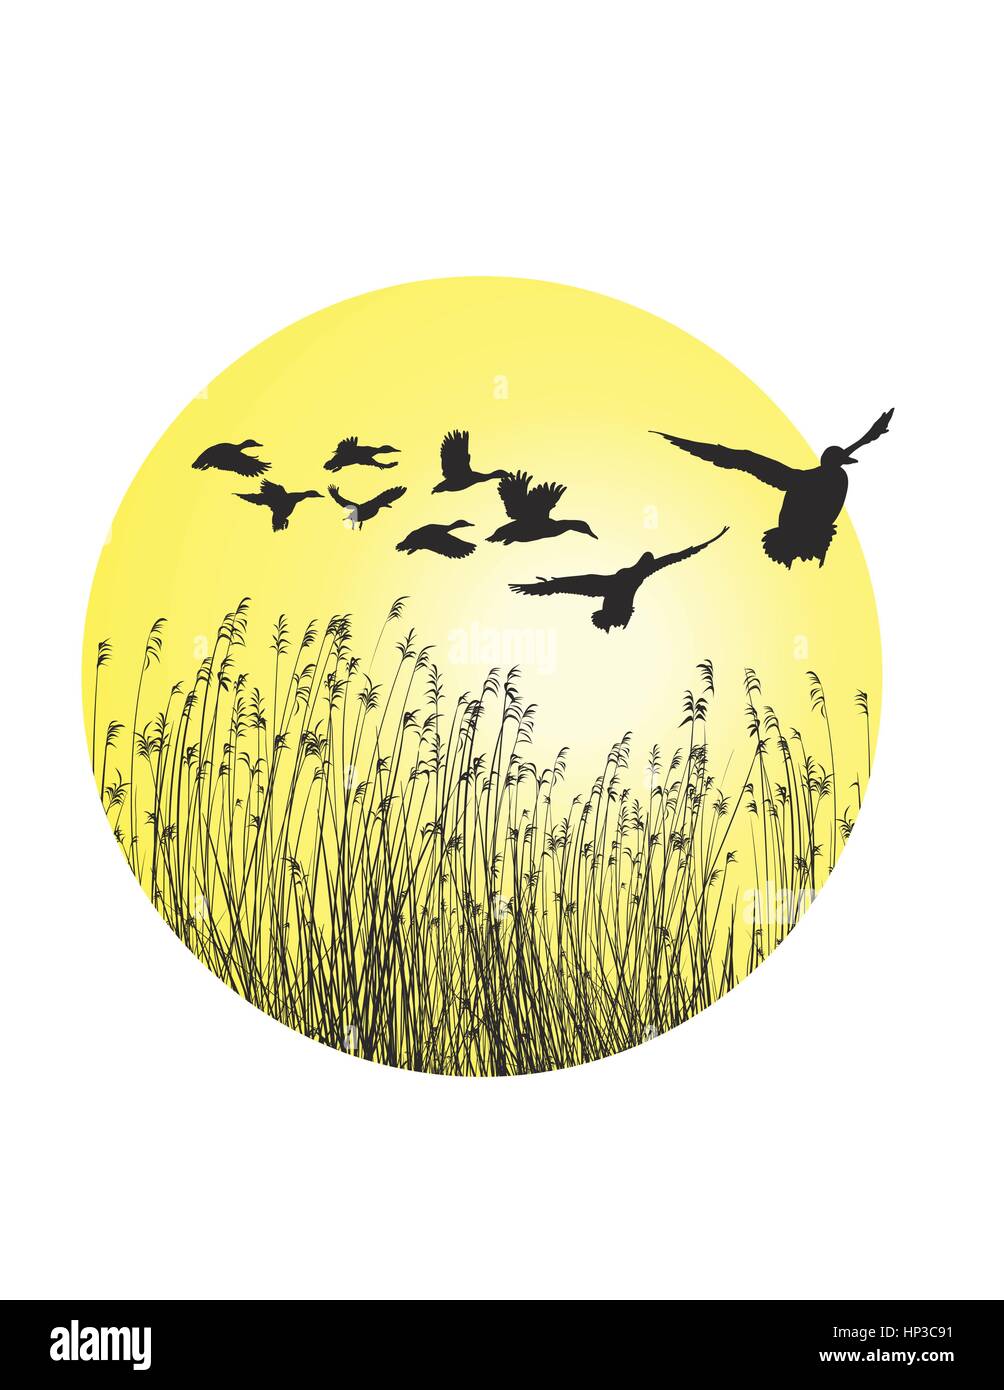 Un projet de circulaire de roseaux et paysage-vol d'oies sauvages Illustration de Vecteur